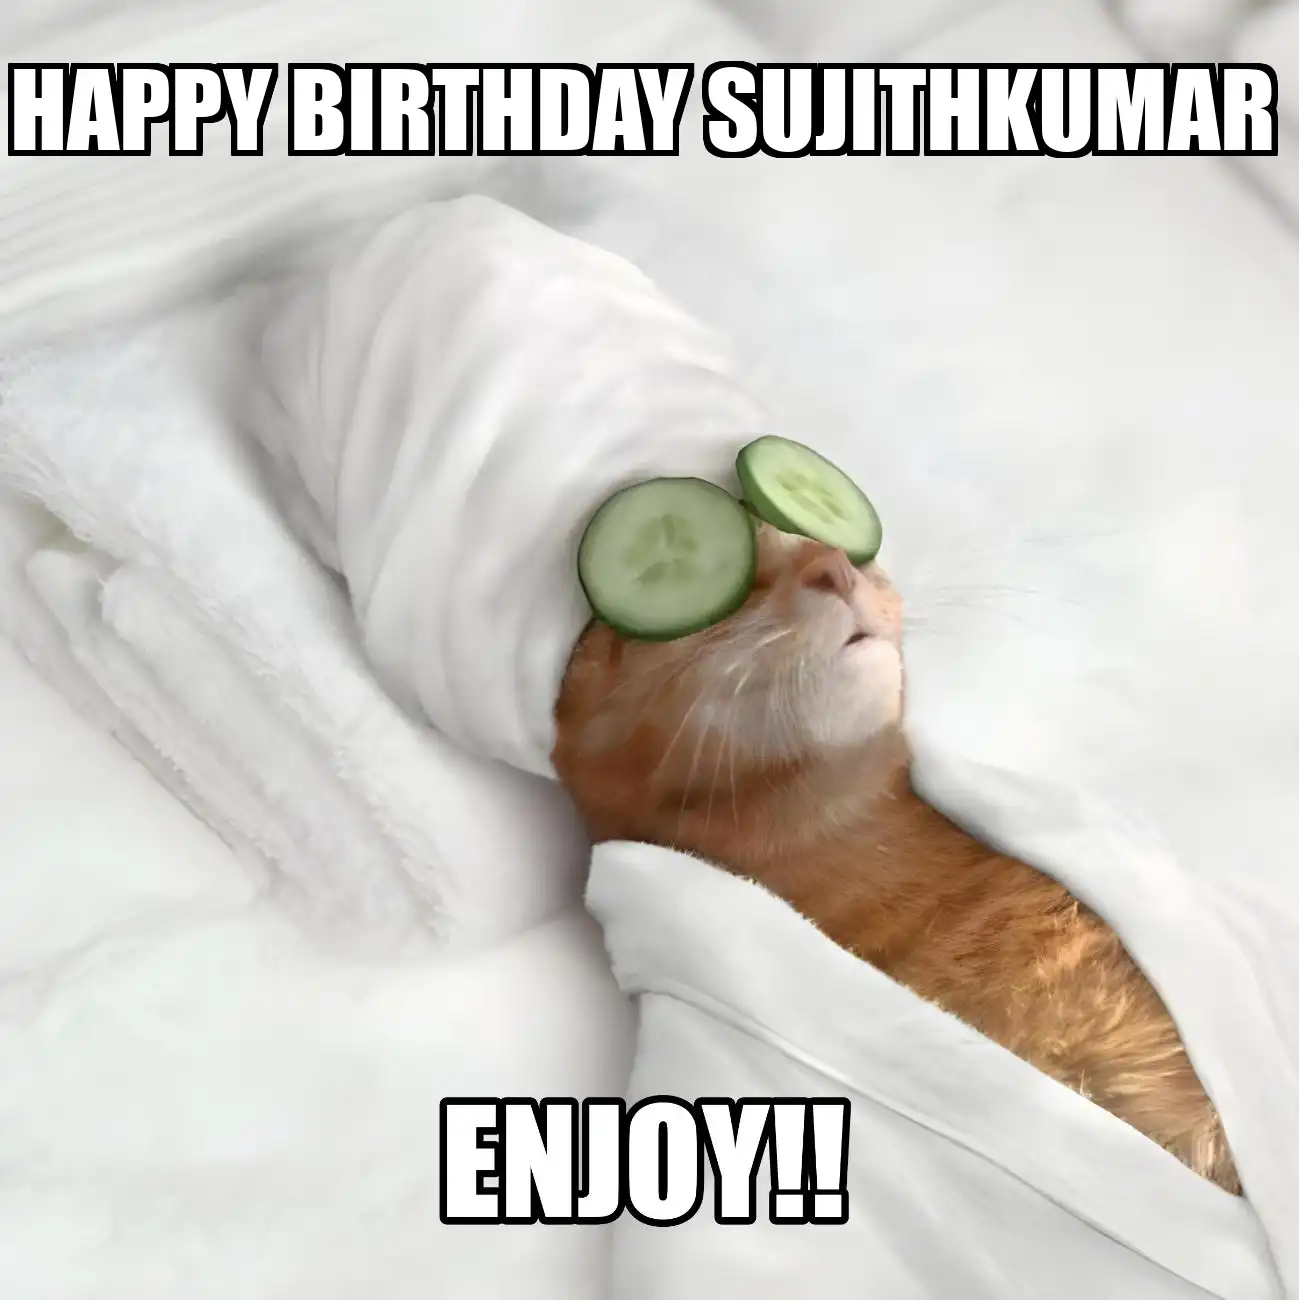 Happy Birthday Sujithkumar Enjoy Cat Meme